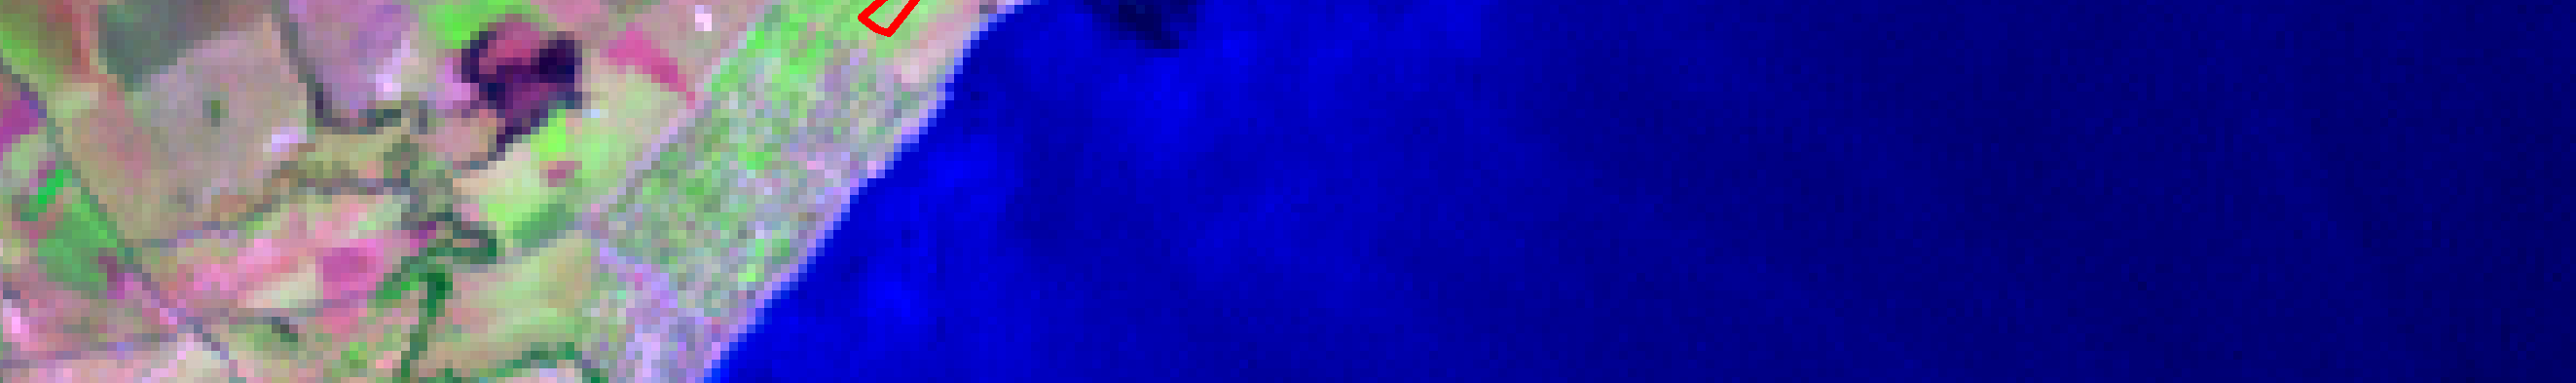 ArcPlan S/S Ltda. Imagem Landsat 2000 Fone: 3262-3055 13 de 27 Imagem Cbers 2005 Fig. 6 Comparação de Imagem Landsat do ano de 2000 com imagem CBERS do ano 2005.